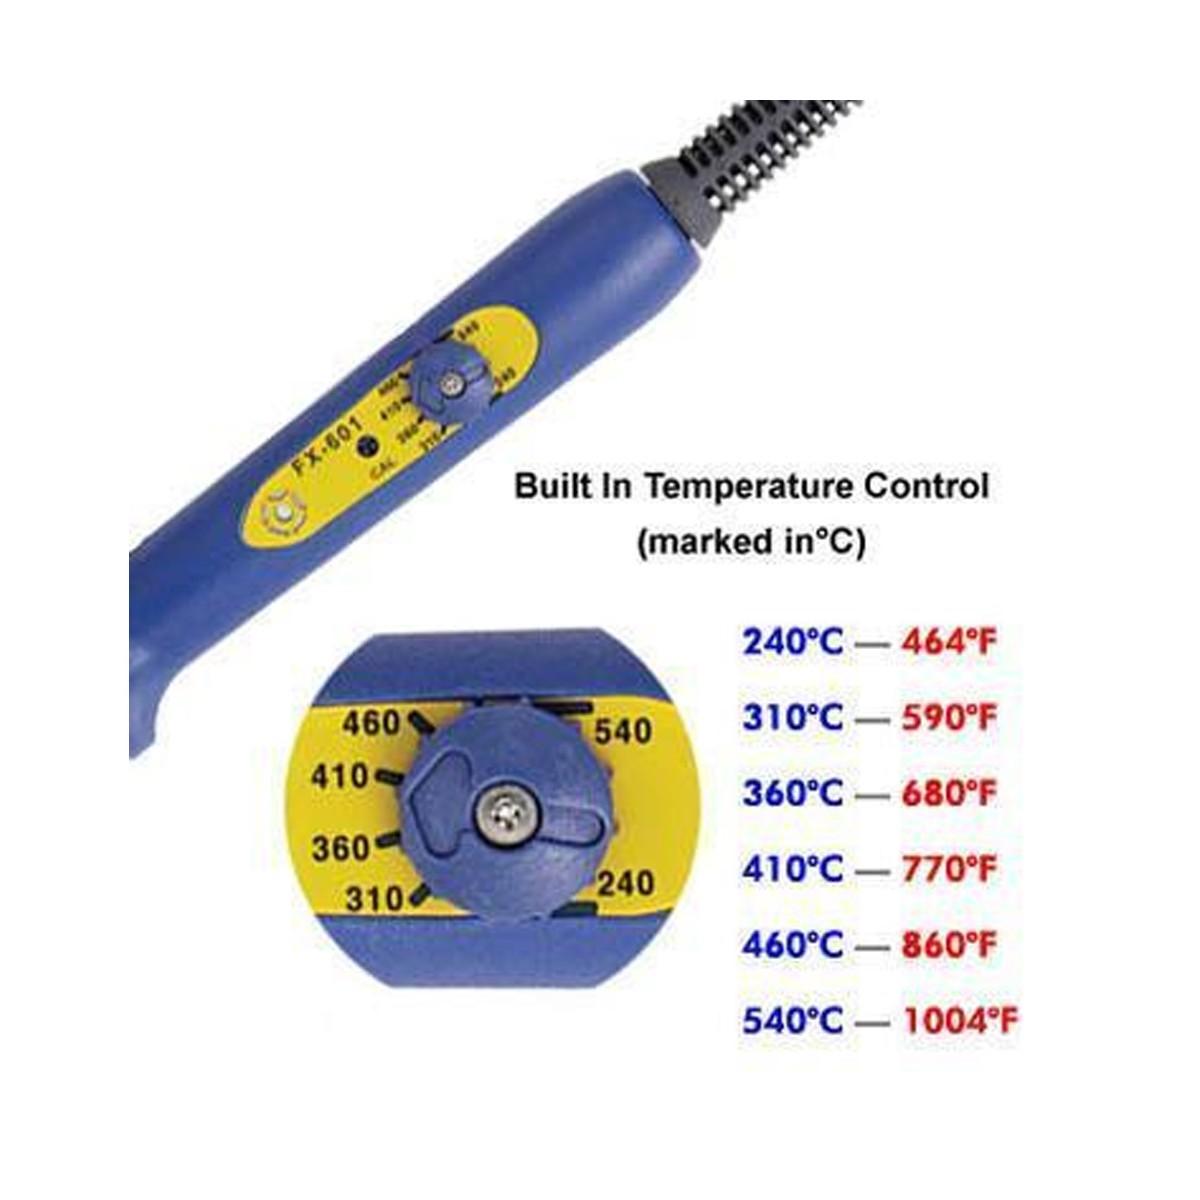 09785-Hakko FX601-02 Professional Temperature Control Solder Iron